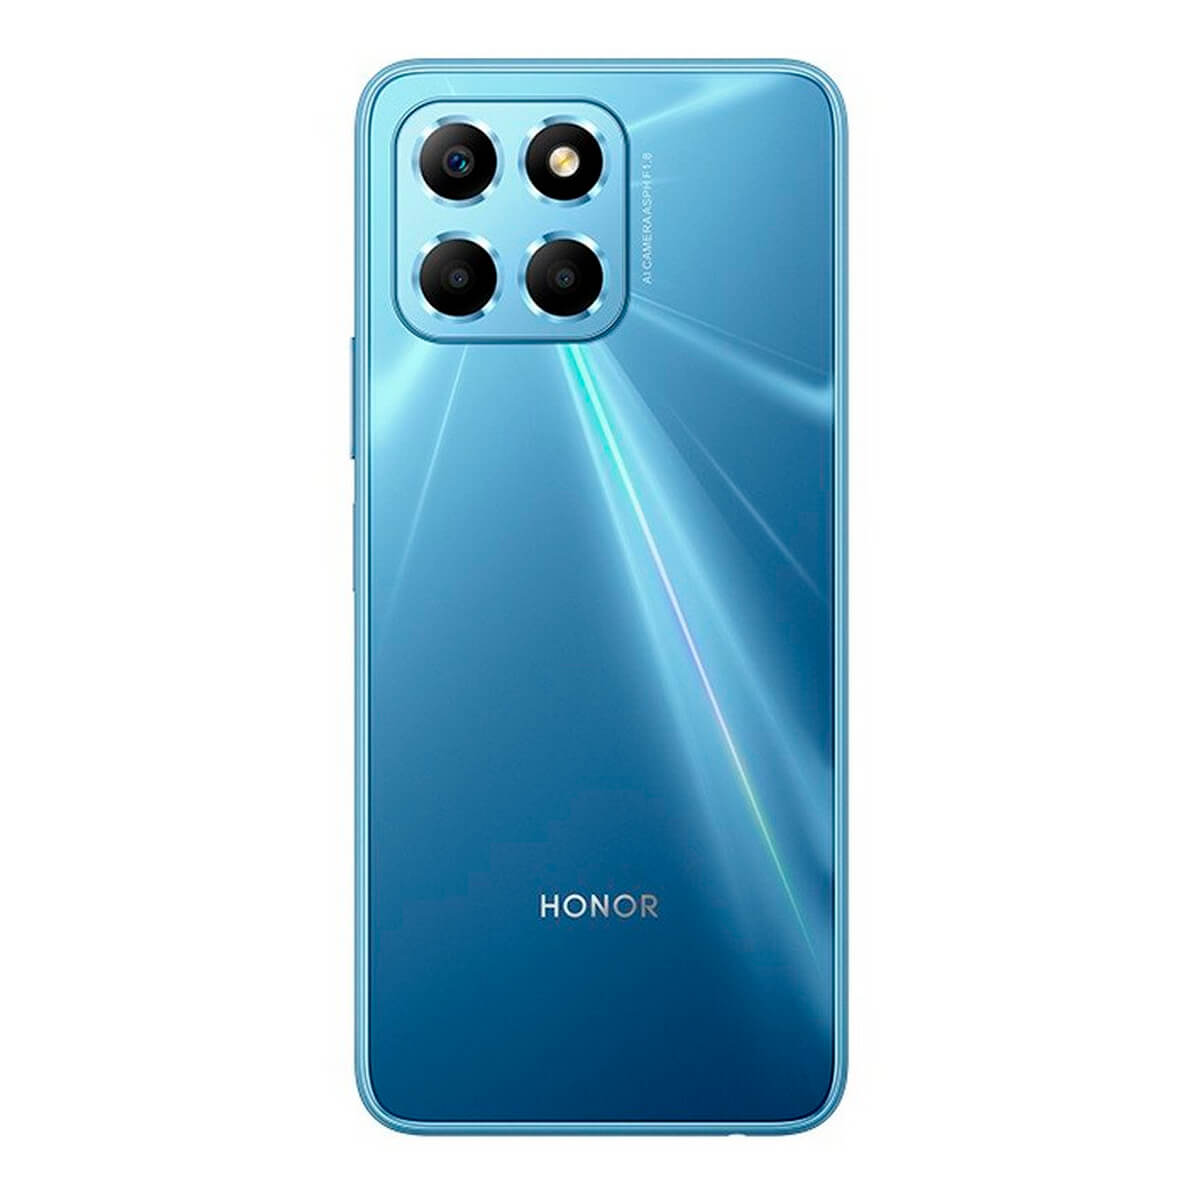 Honor X6 4GB/64GB Blue (Ocean Blue) Dual SIM VNE-LX1